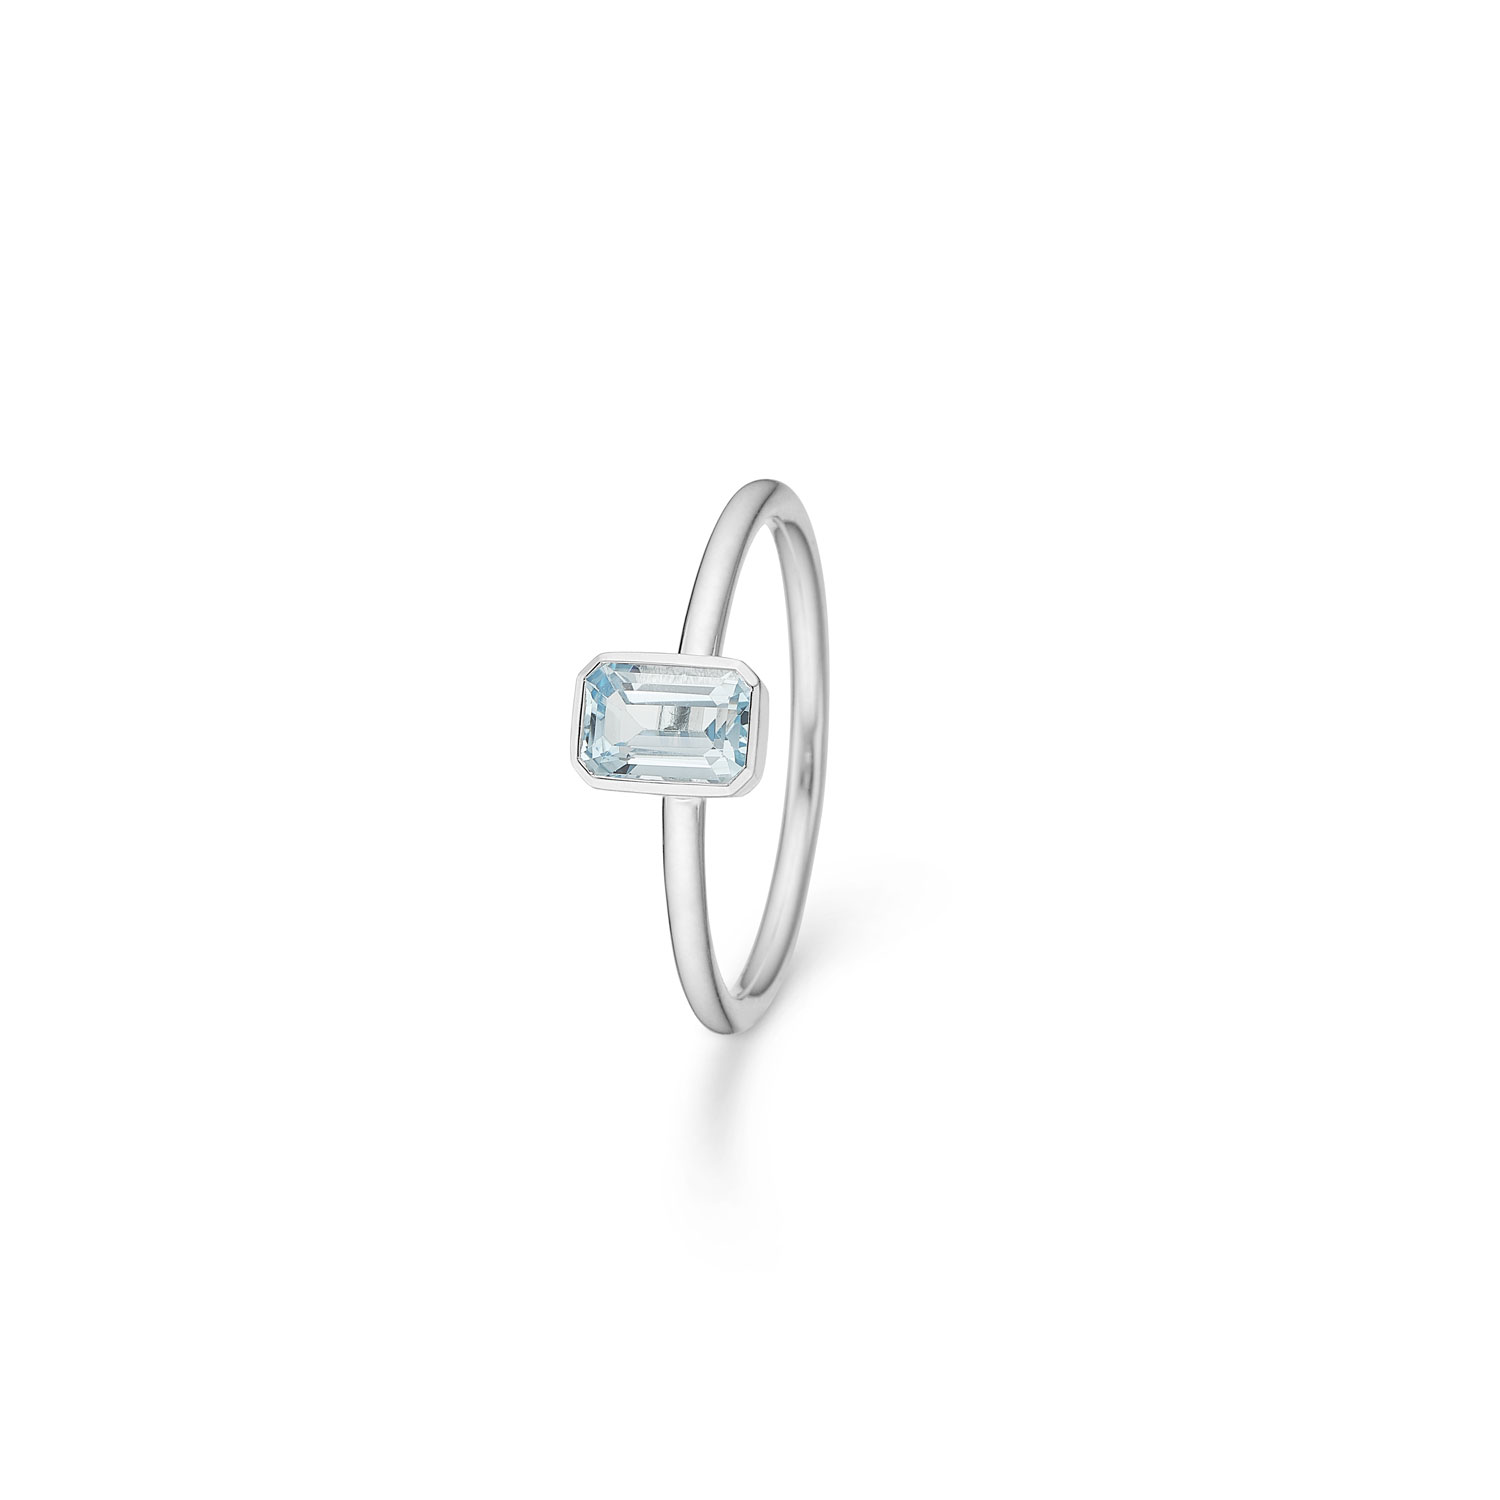 Billede af Mads Z Aurora ring, blå topas - 2146501 Sølv m. blå topas 54